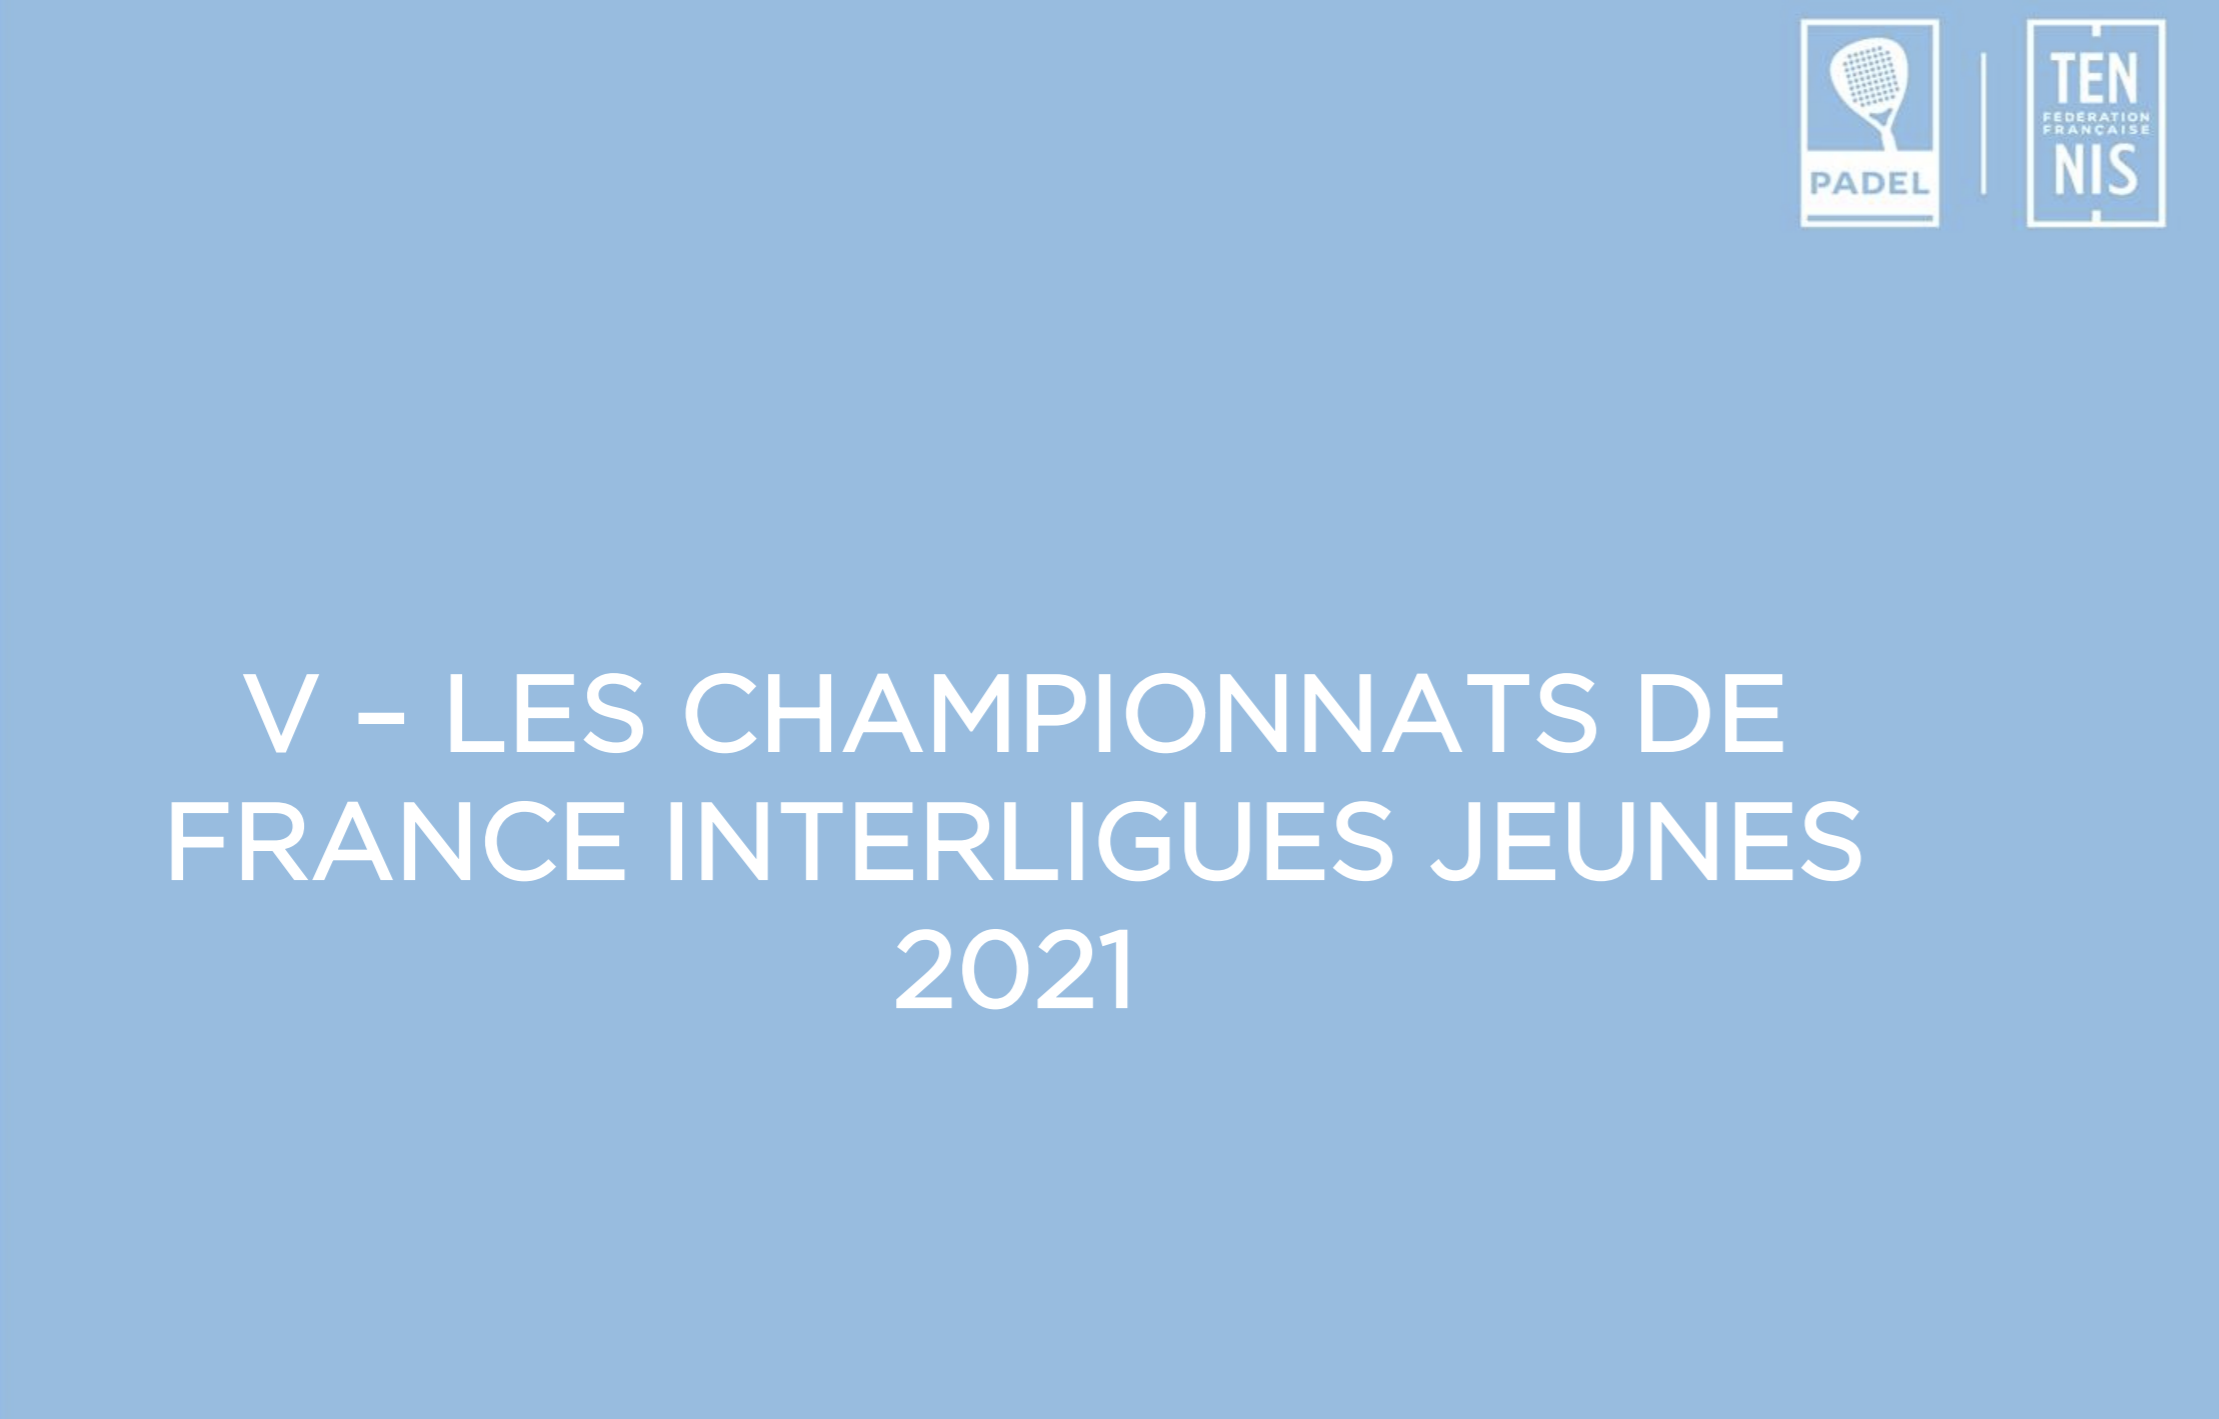 Campionati francesi giovanili 2021: 18 e 19 settembre